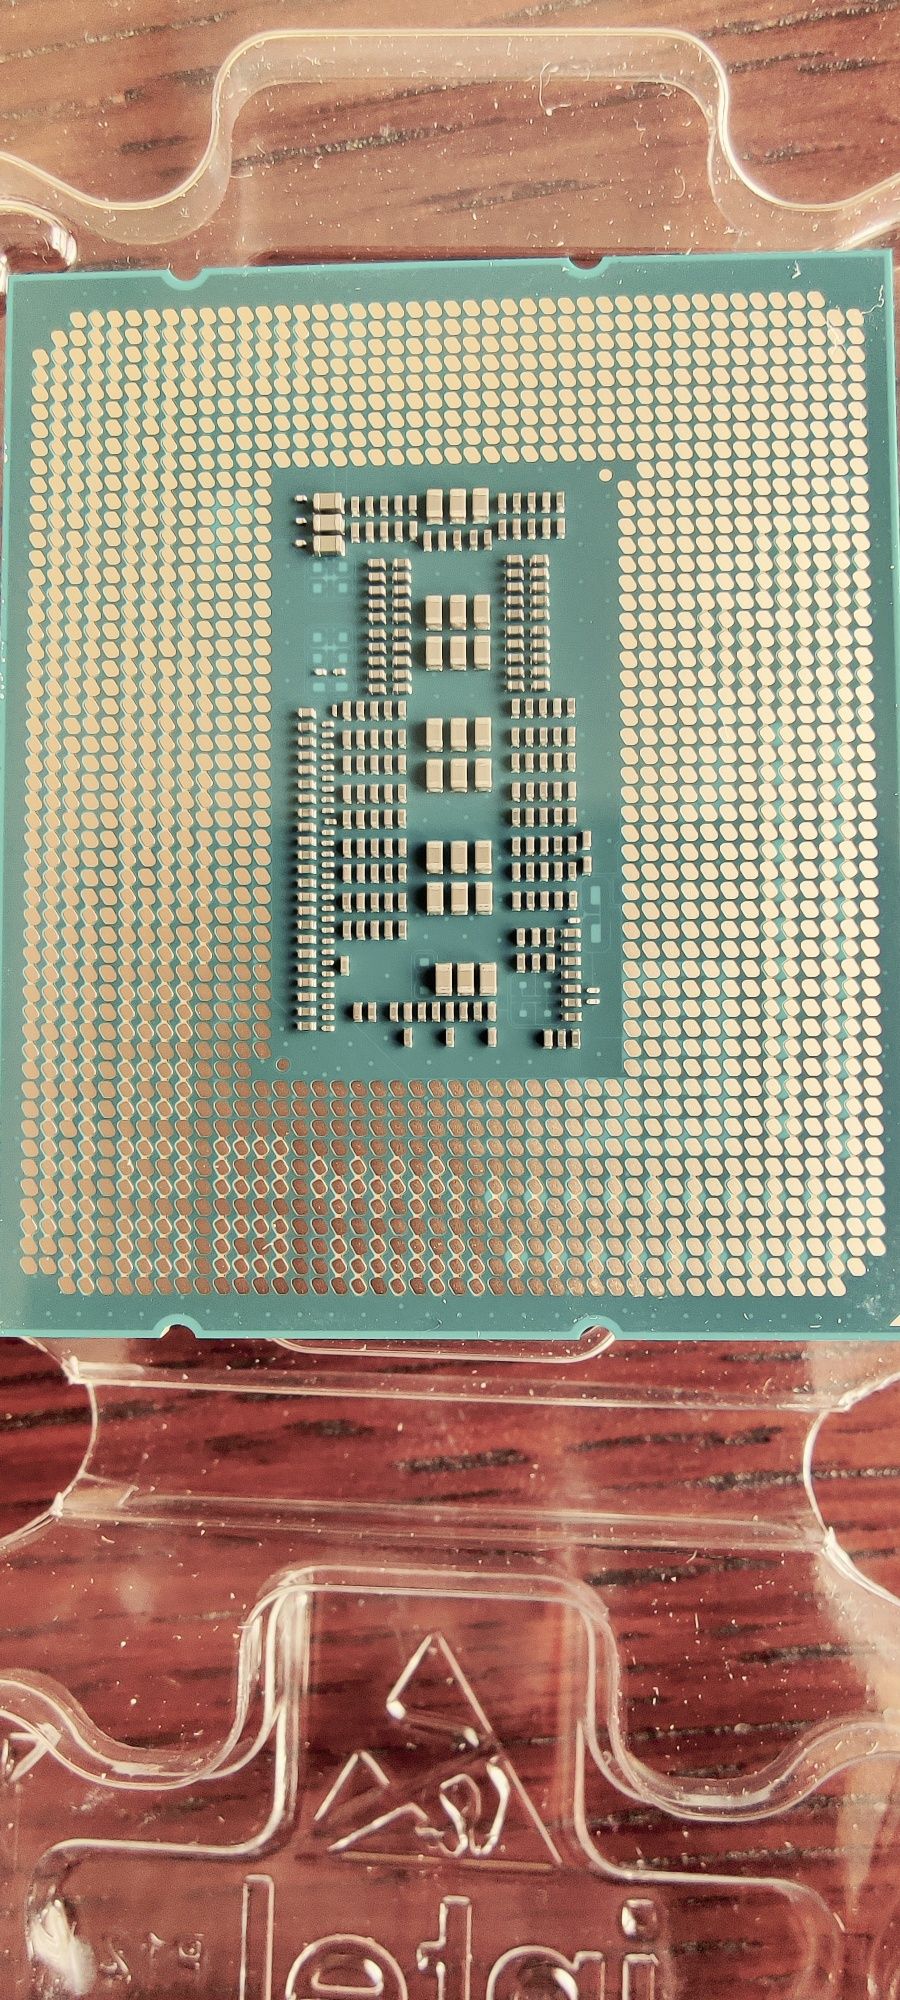 Procesor Intel i5-13600K 14 x 3,5 GHz gen. 13 plus chłodzenie gwar